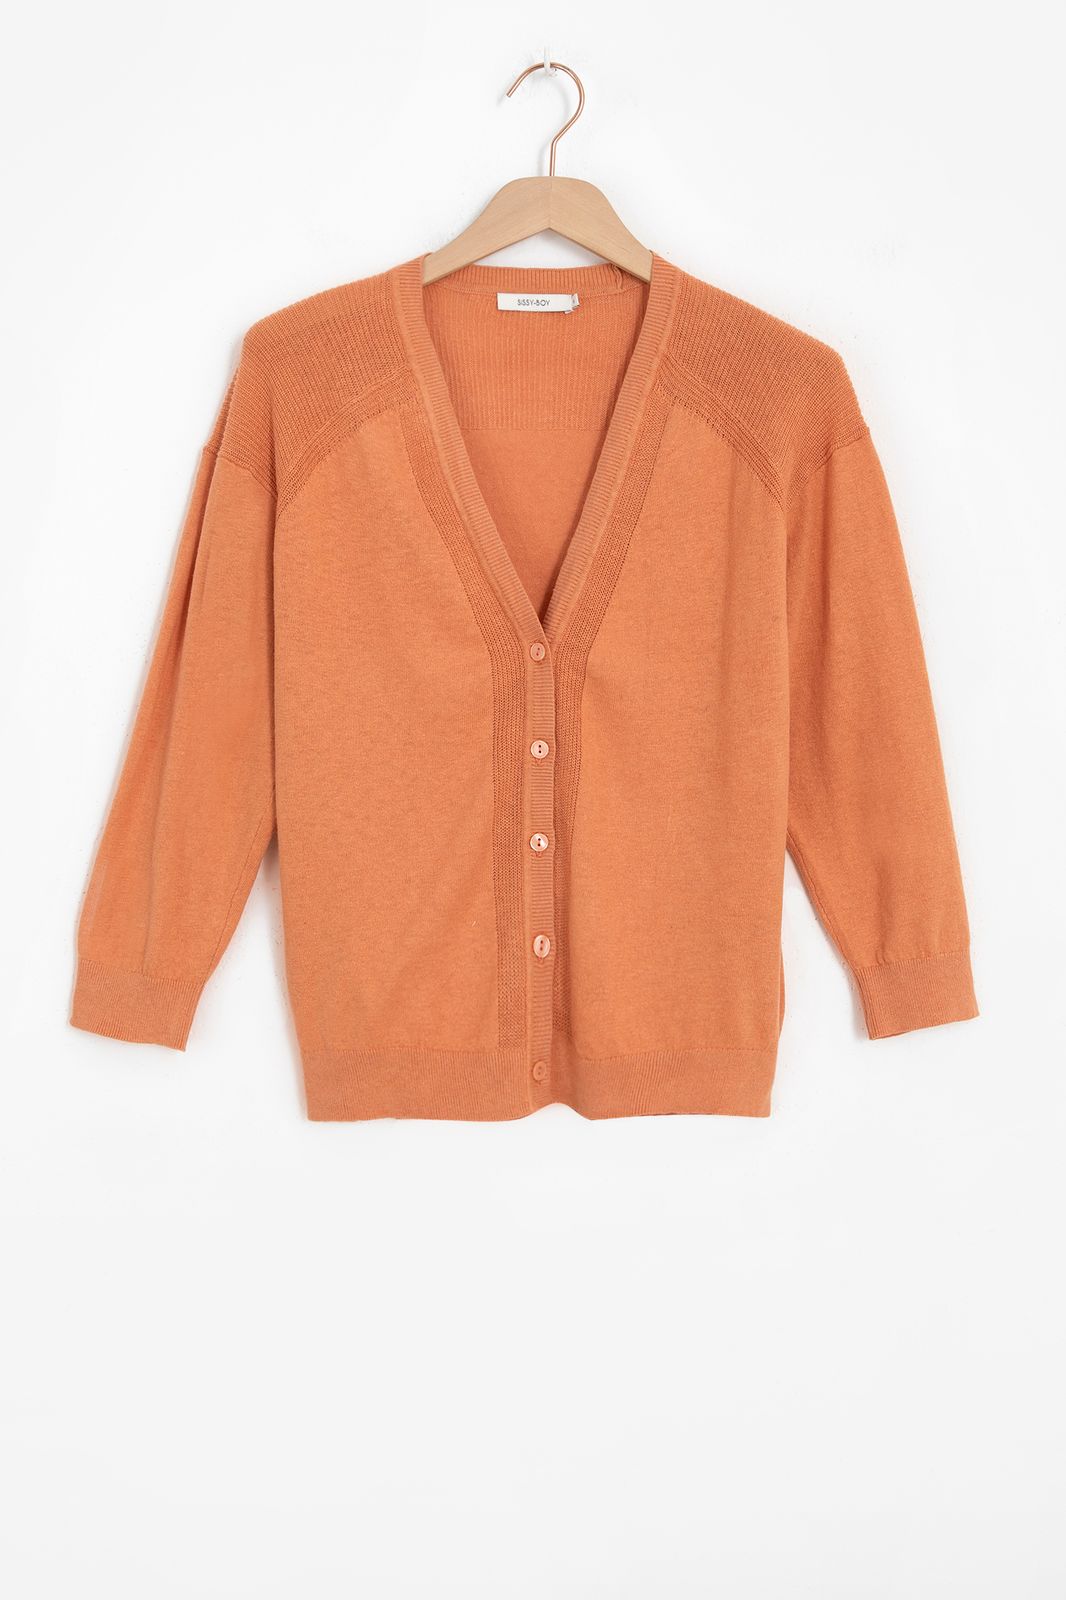 Gilet tricoté avec boutons - orange